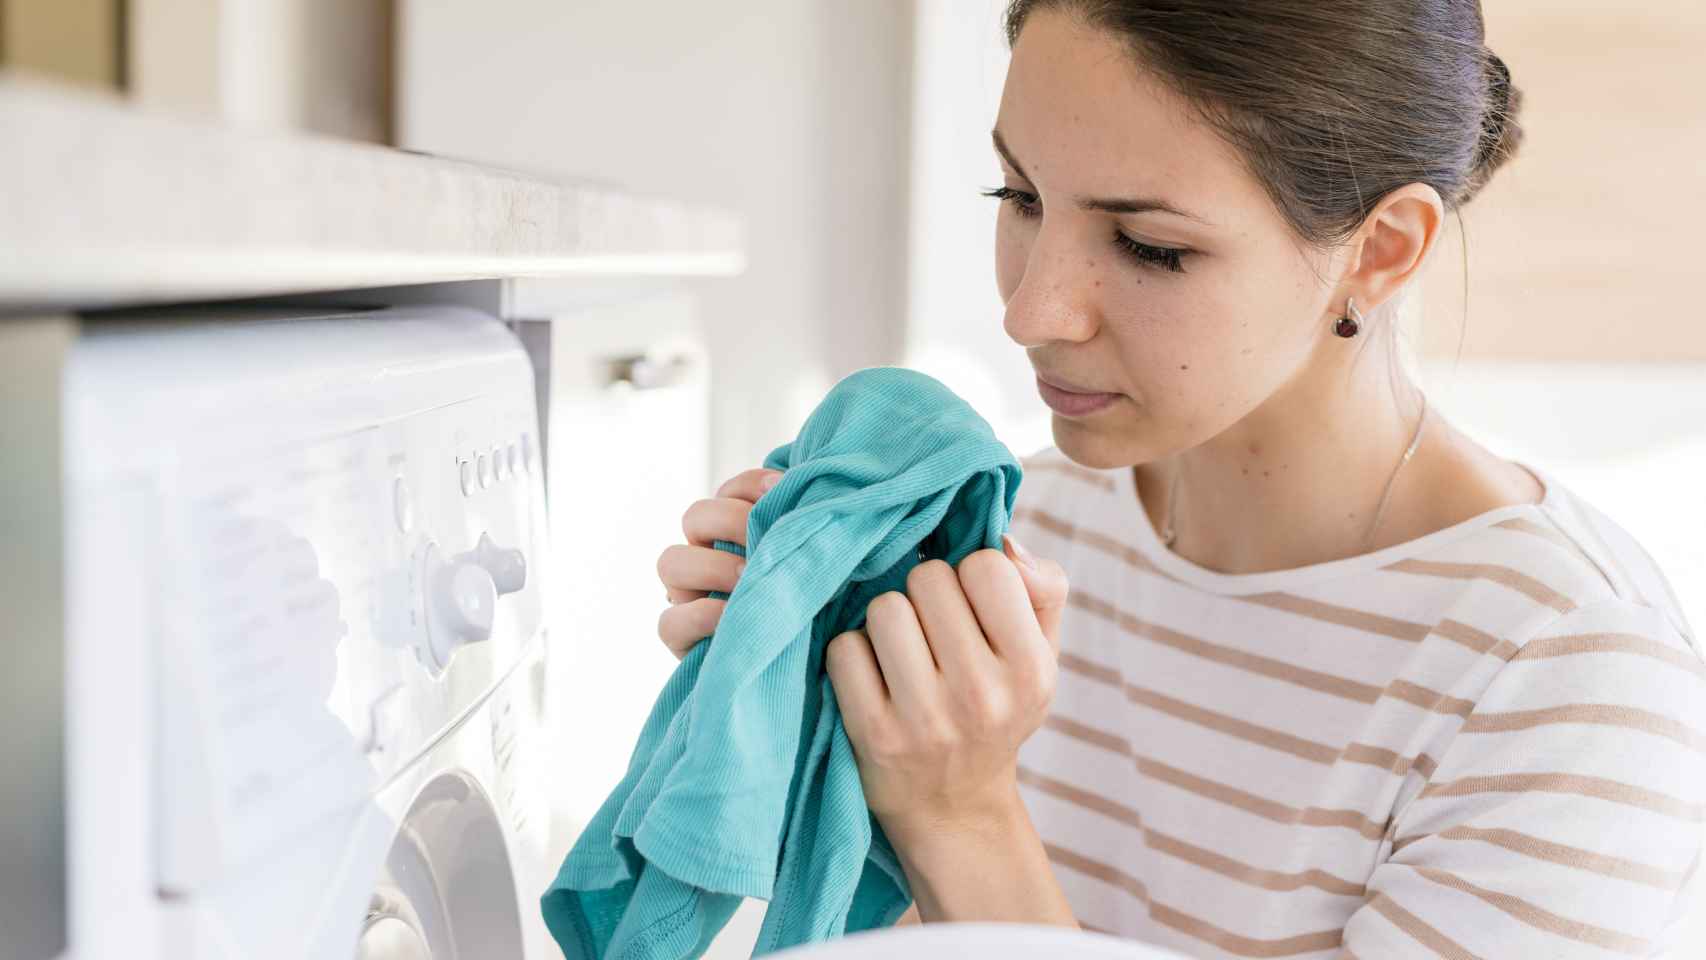 Cómo quitar el mal olor de la ropa sin lavarla